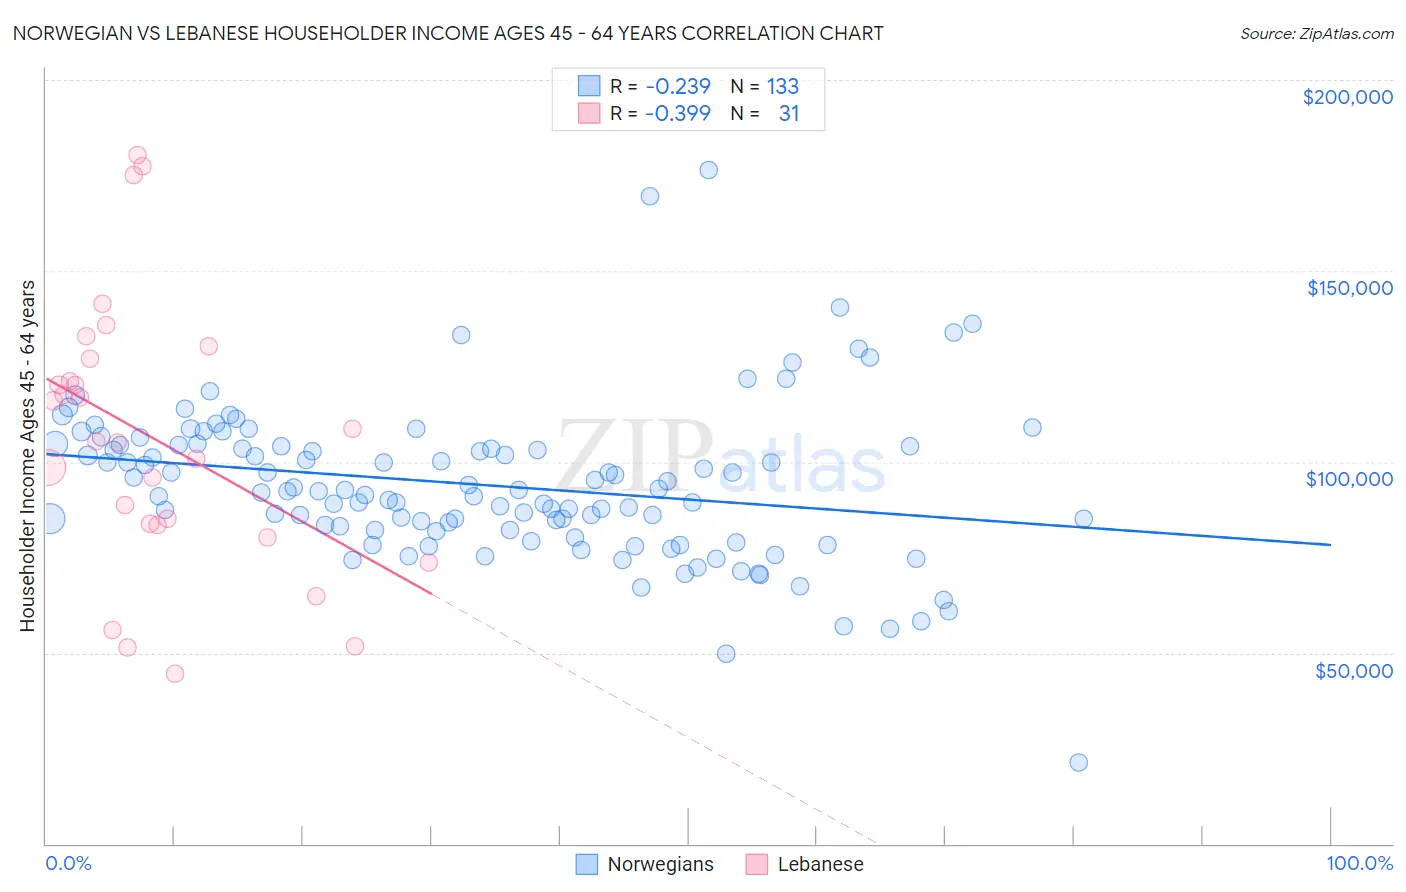 Norwegian vs Lebanese Householder Income Ages 45 - 64 years